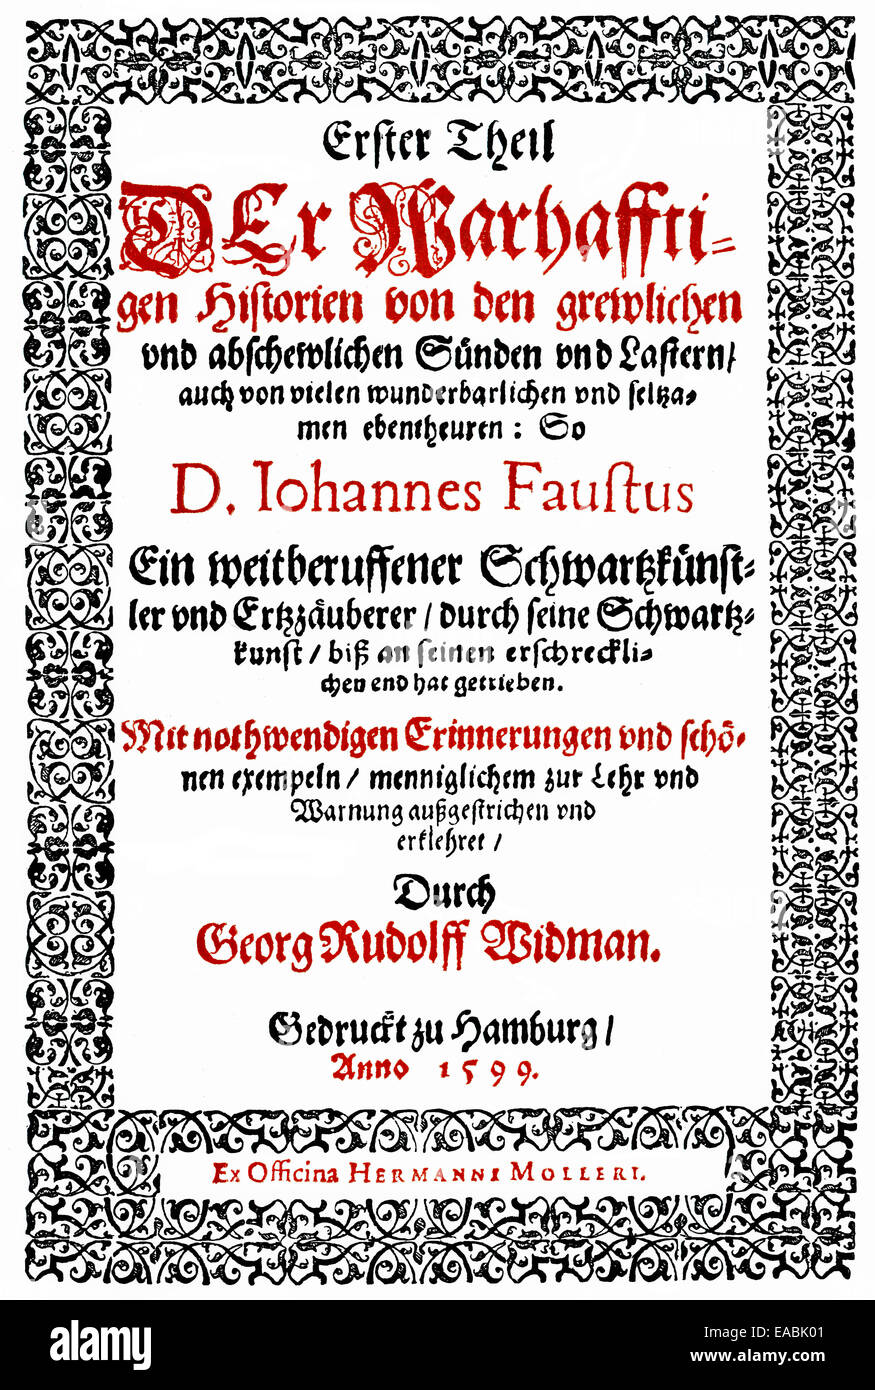 Stampa storico, 1599, pagina anteriore di un libro di Faust di Georg Rudolf Widmann, Historische Druck, 1599, Titelseite eines Faust-Buches Foto Stock